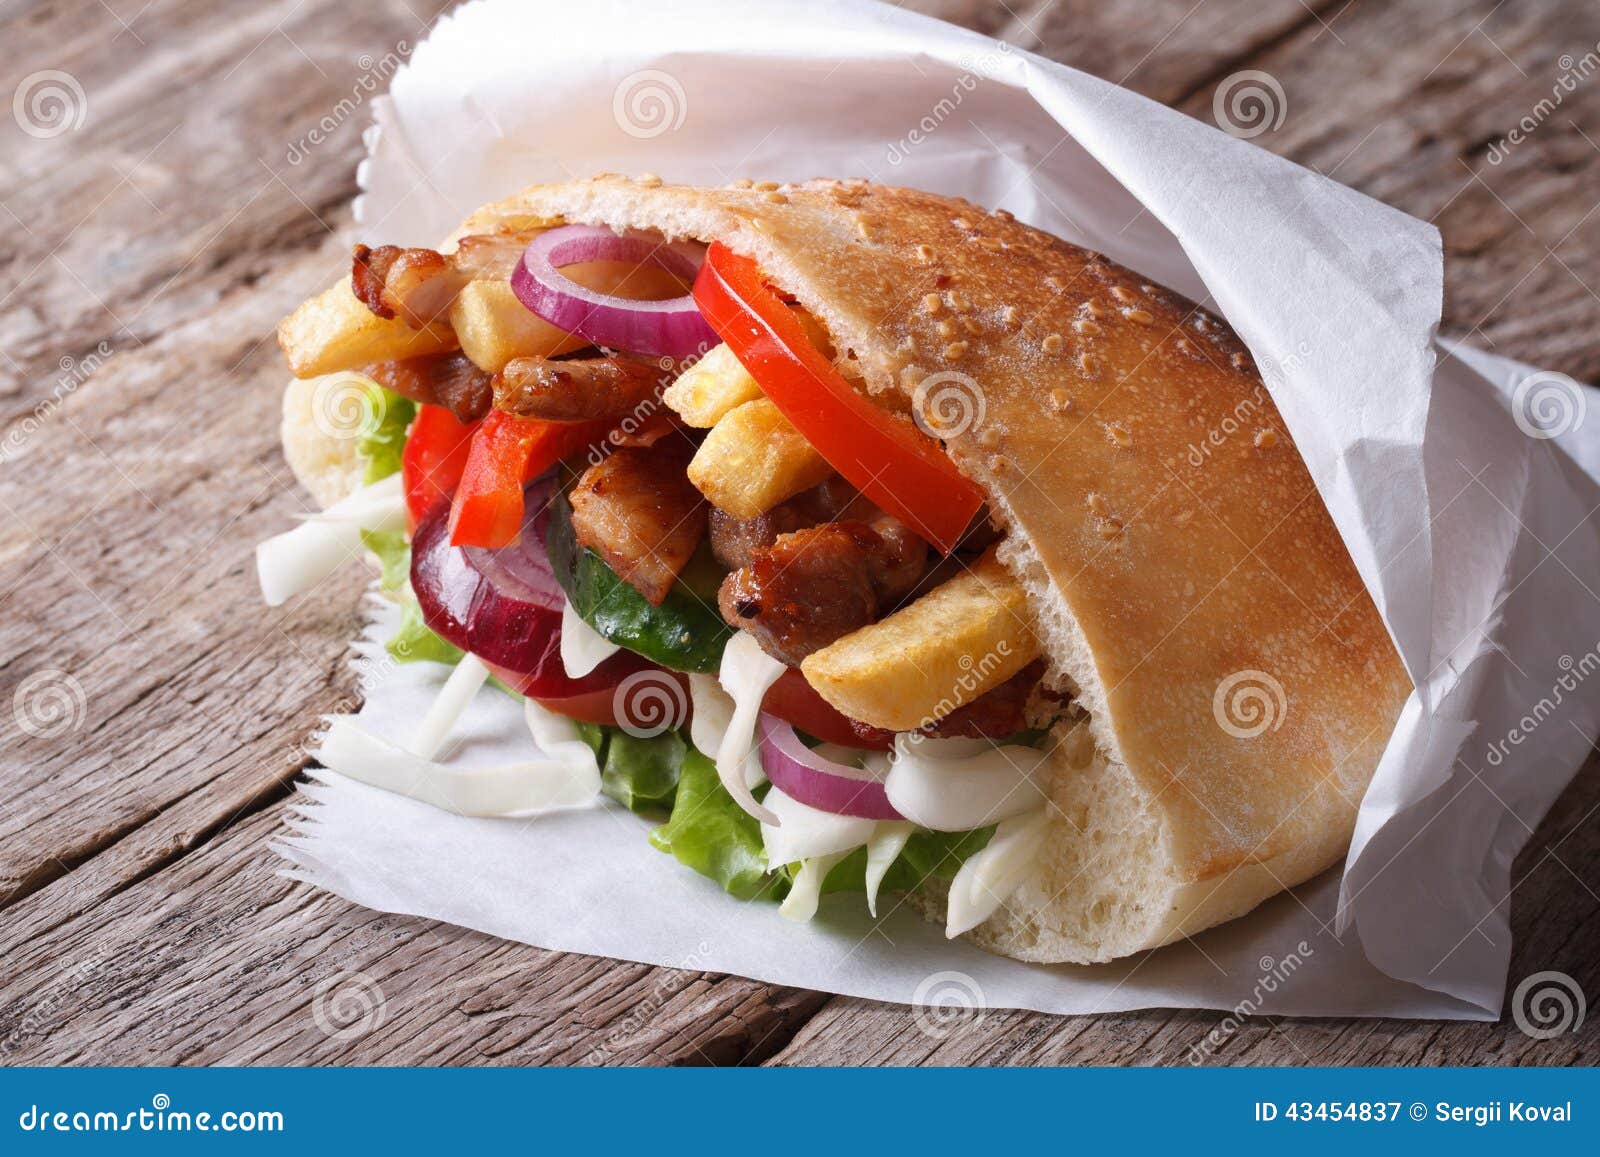 Doner-Kebab Mit Fleisch, Gebratenen Kartoffeln Und Gemüse Stockbild ...